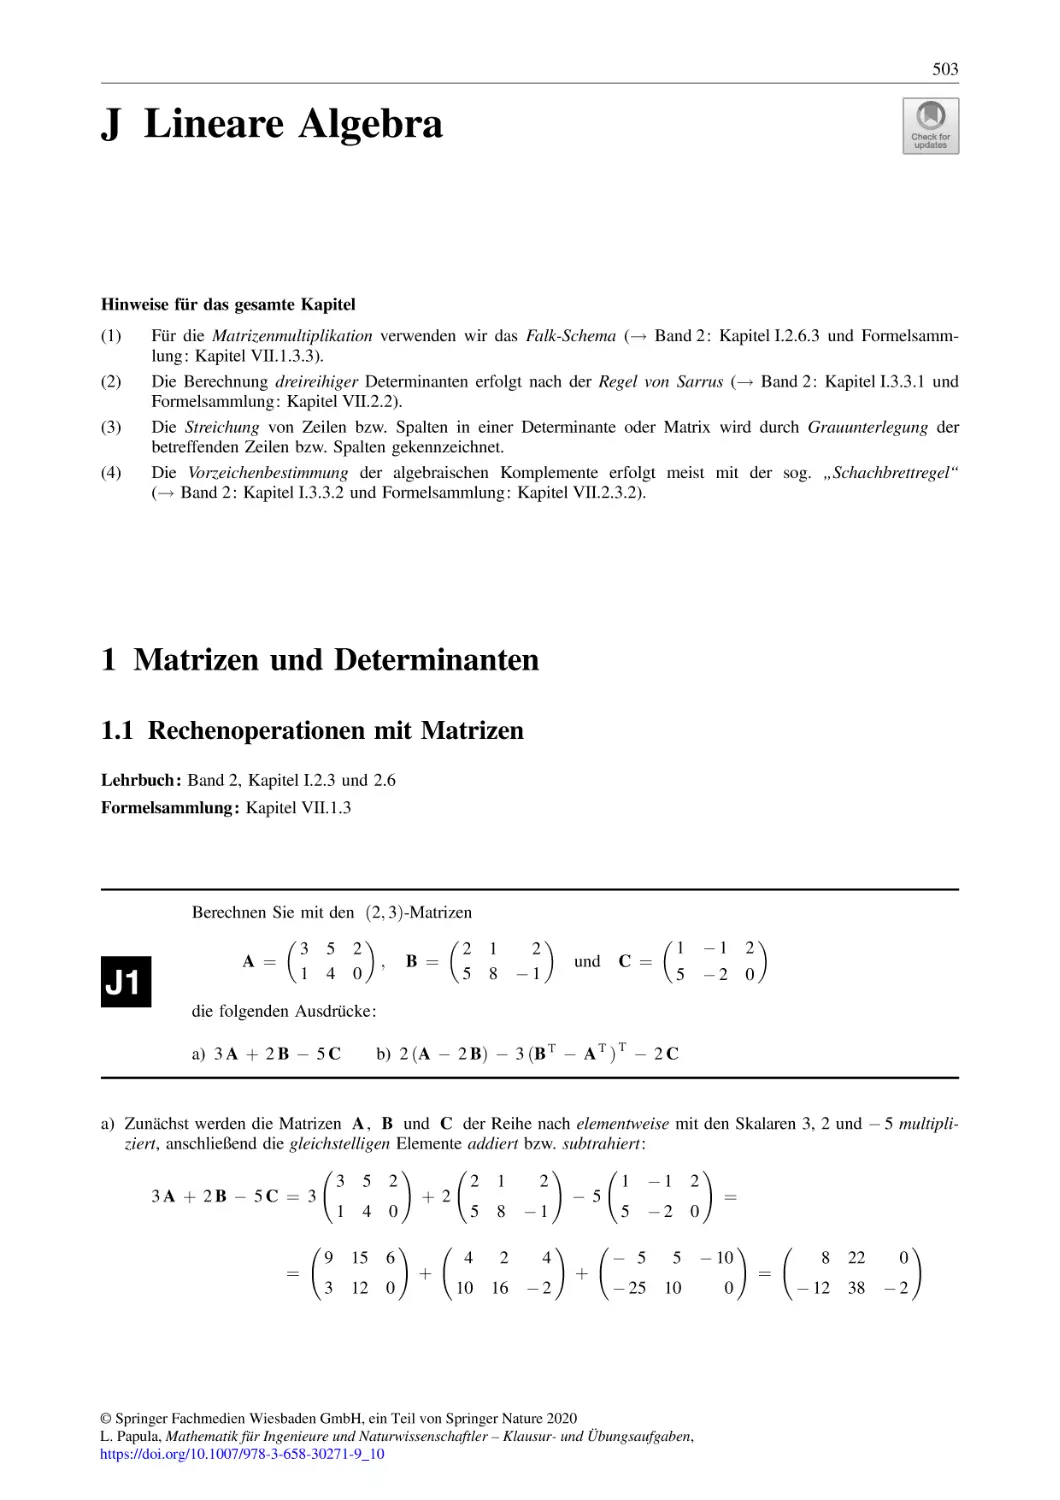 J Lineare Algebra
1 Matrizen und Determinanten
1.1 Rechenoperationen mit Matrizen